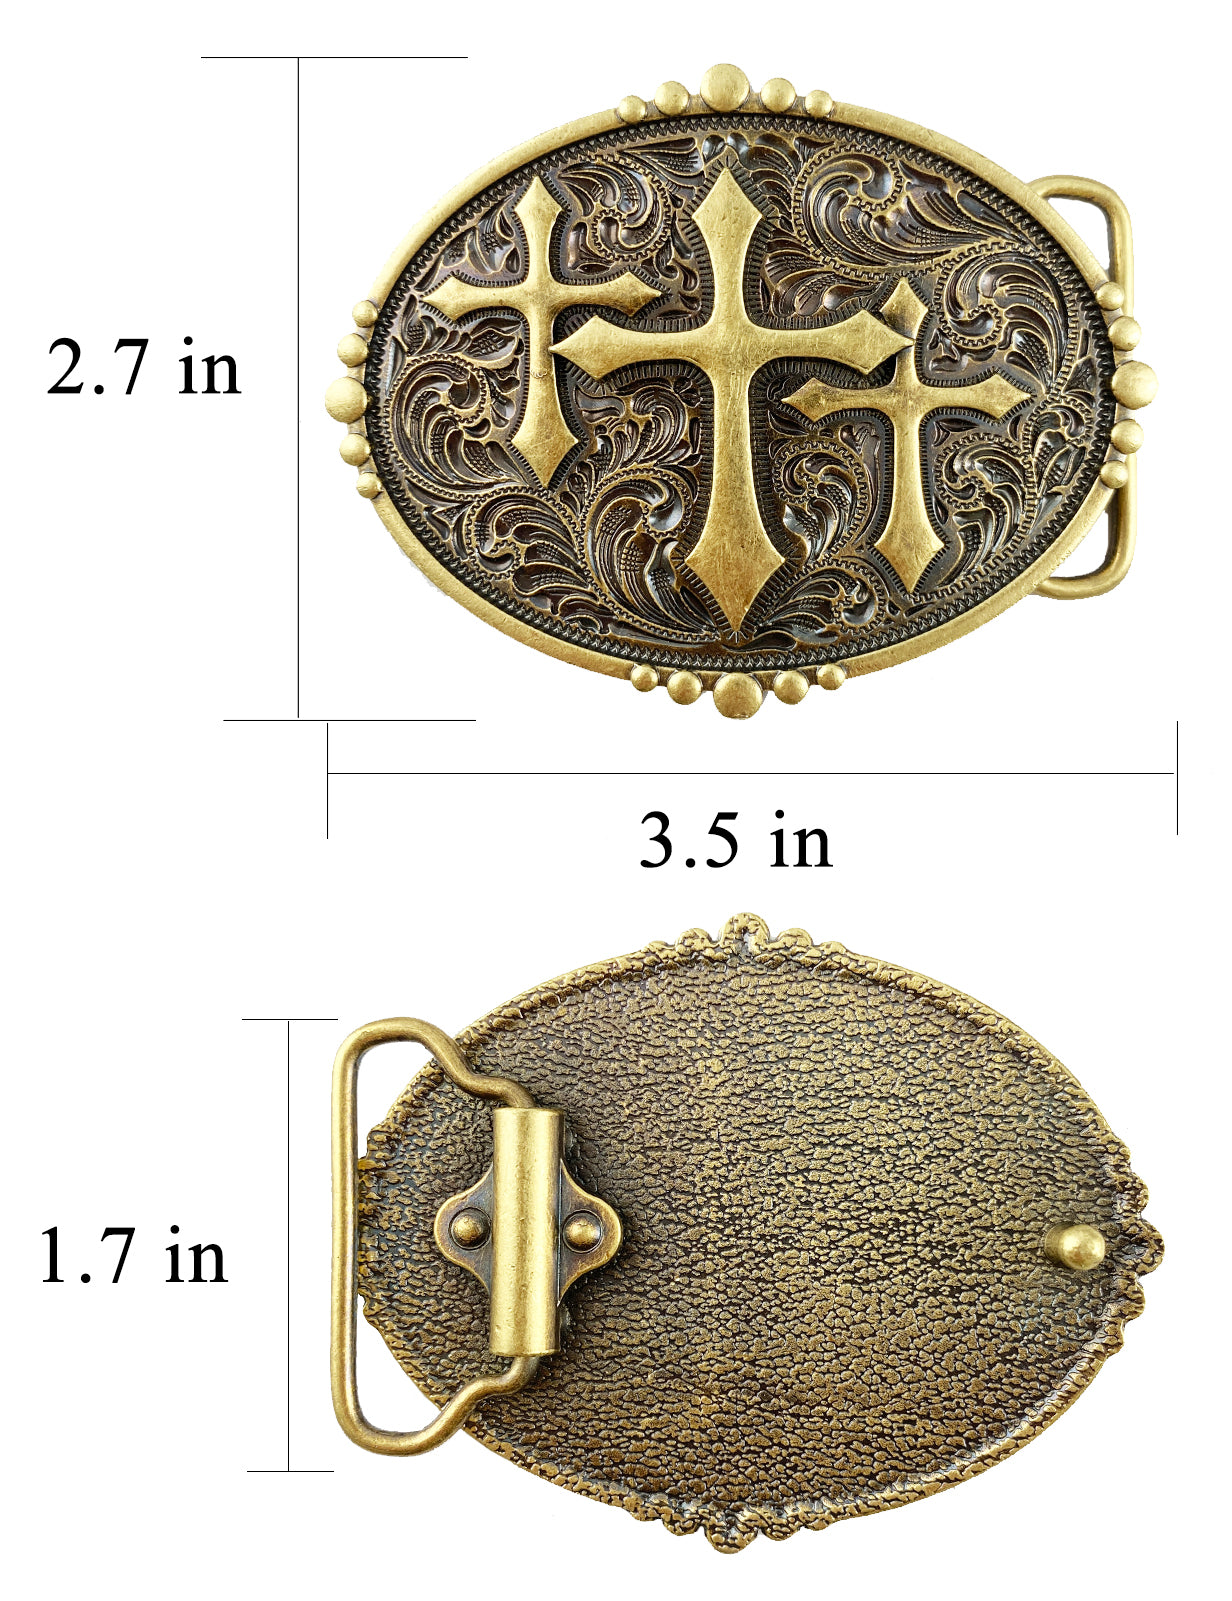 TOPACC Western fivela de cinto com três cruzes cobre/bronze